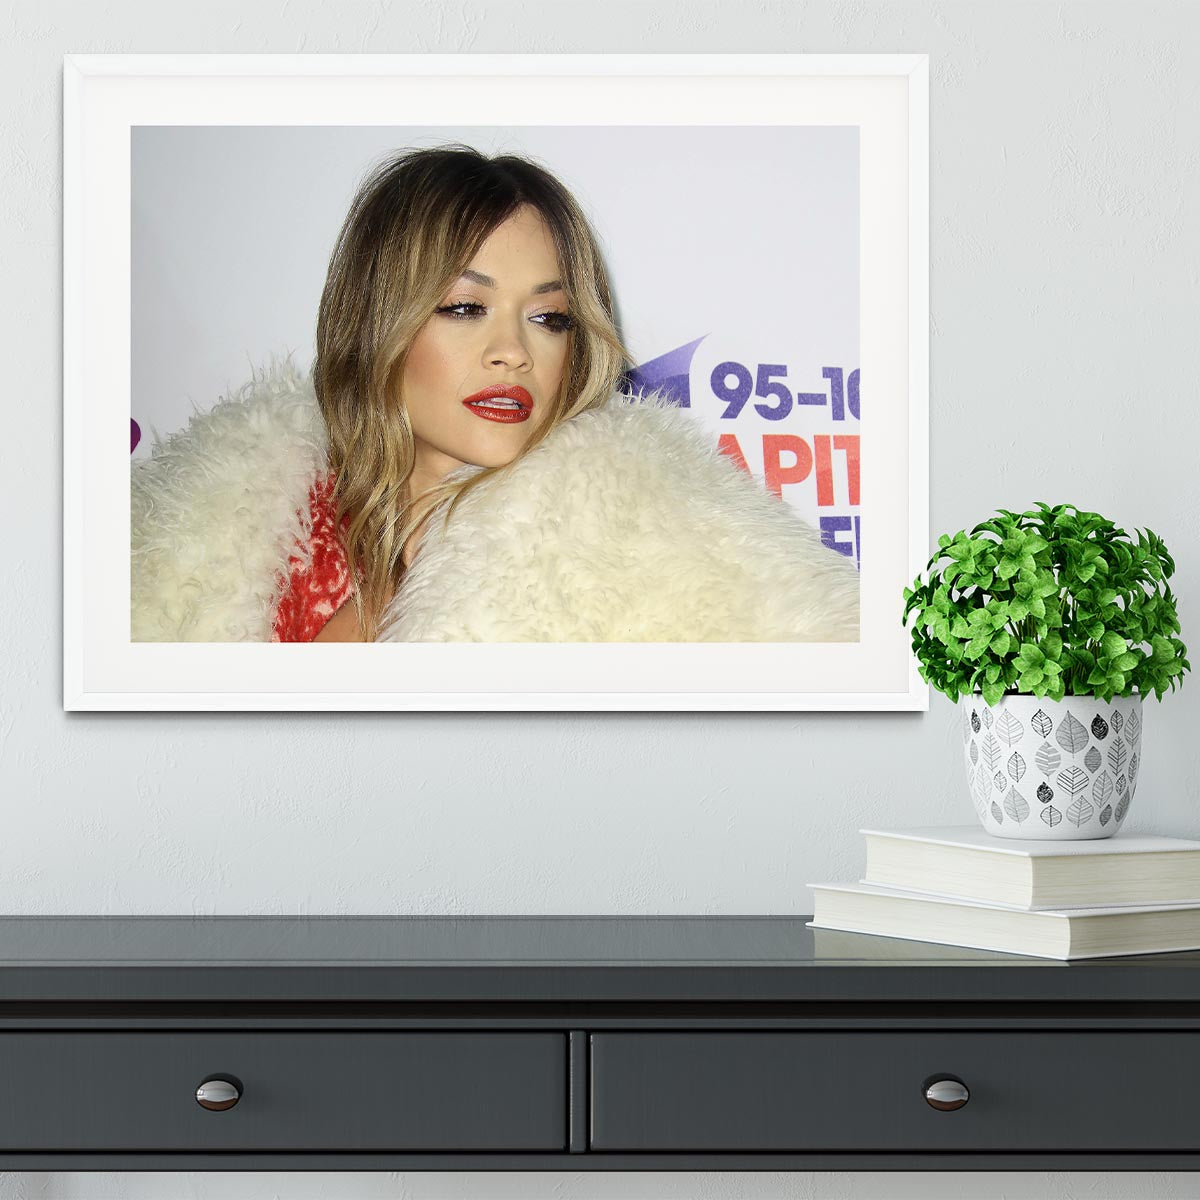 Rita Ora At the Awards Framed Print - Canvas Art Rocks - 5